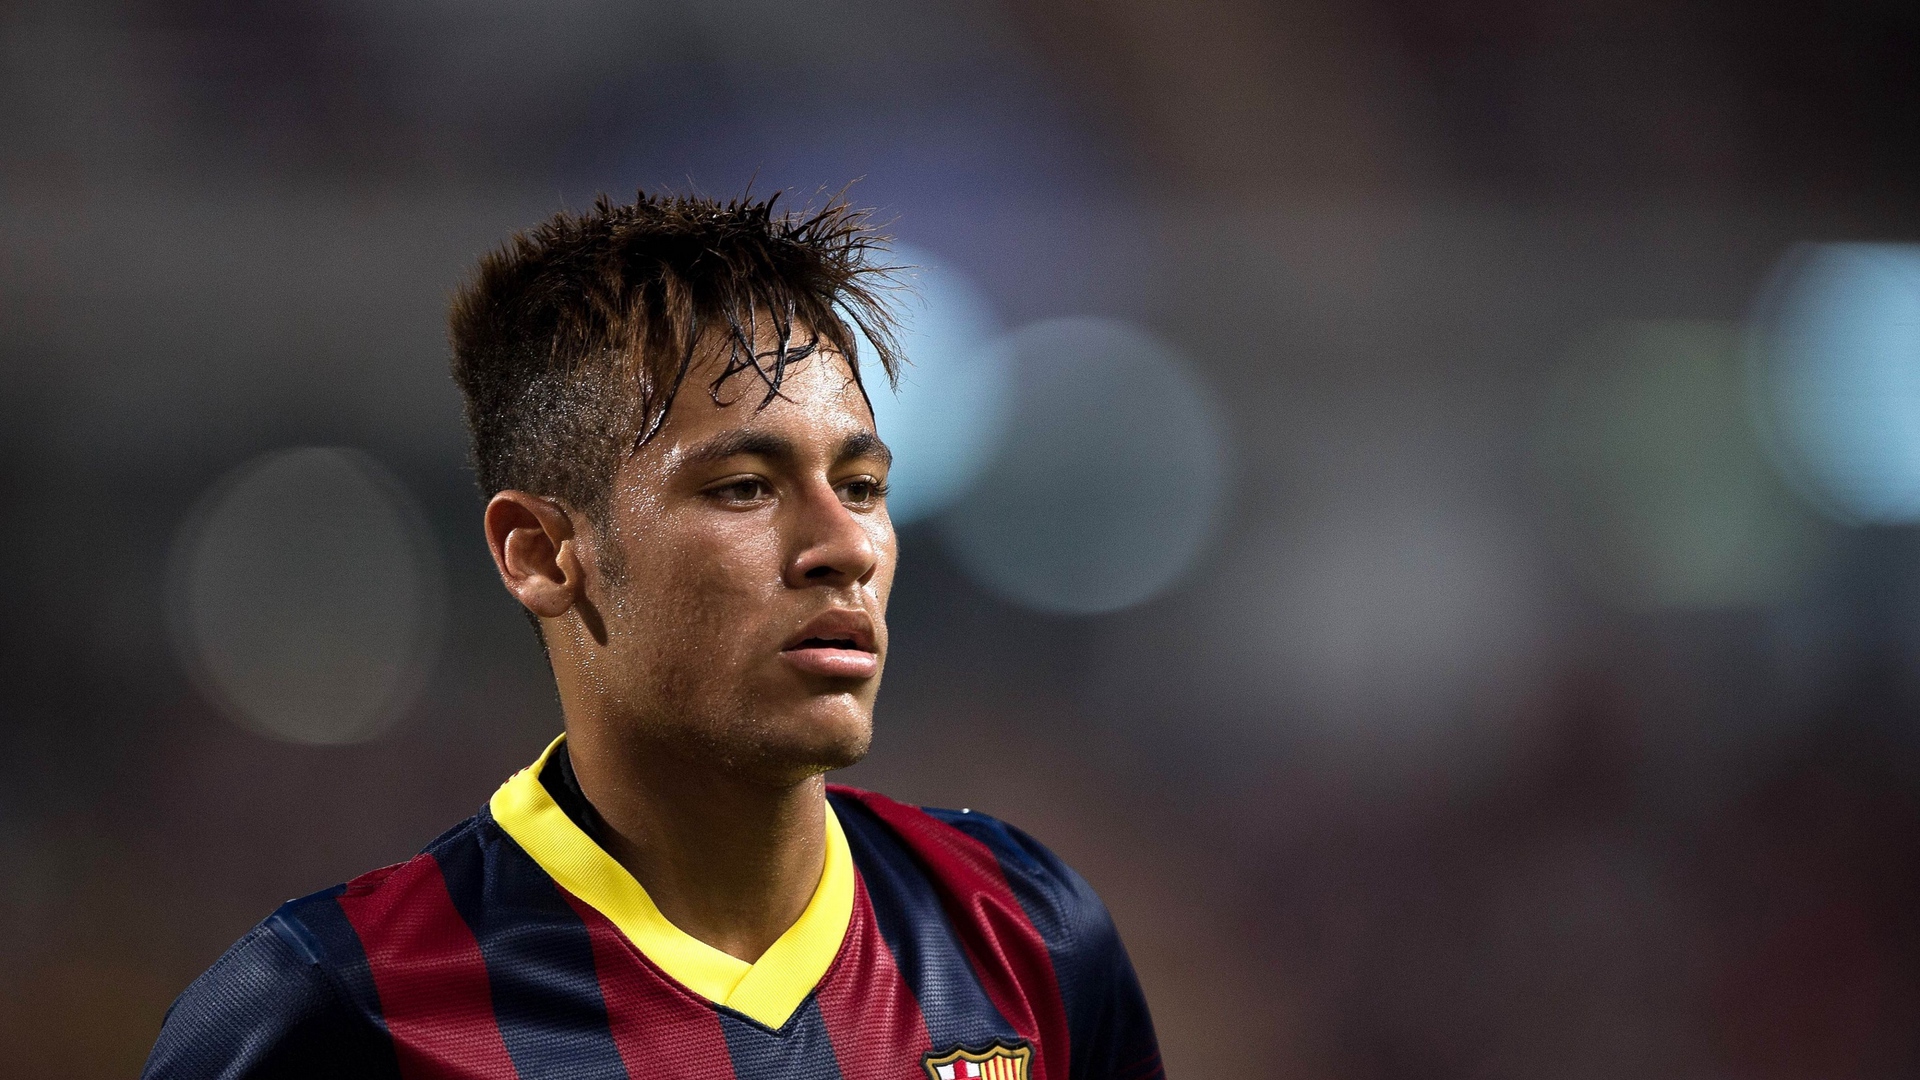 Wallpaper Neymar, Brazilian Footballer, Barcelona - Neymar Foto 4k Hd - HD Wallpaper 